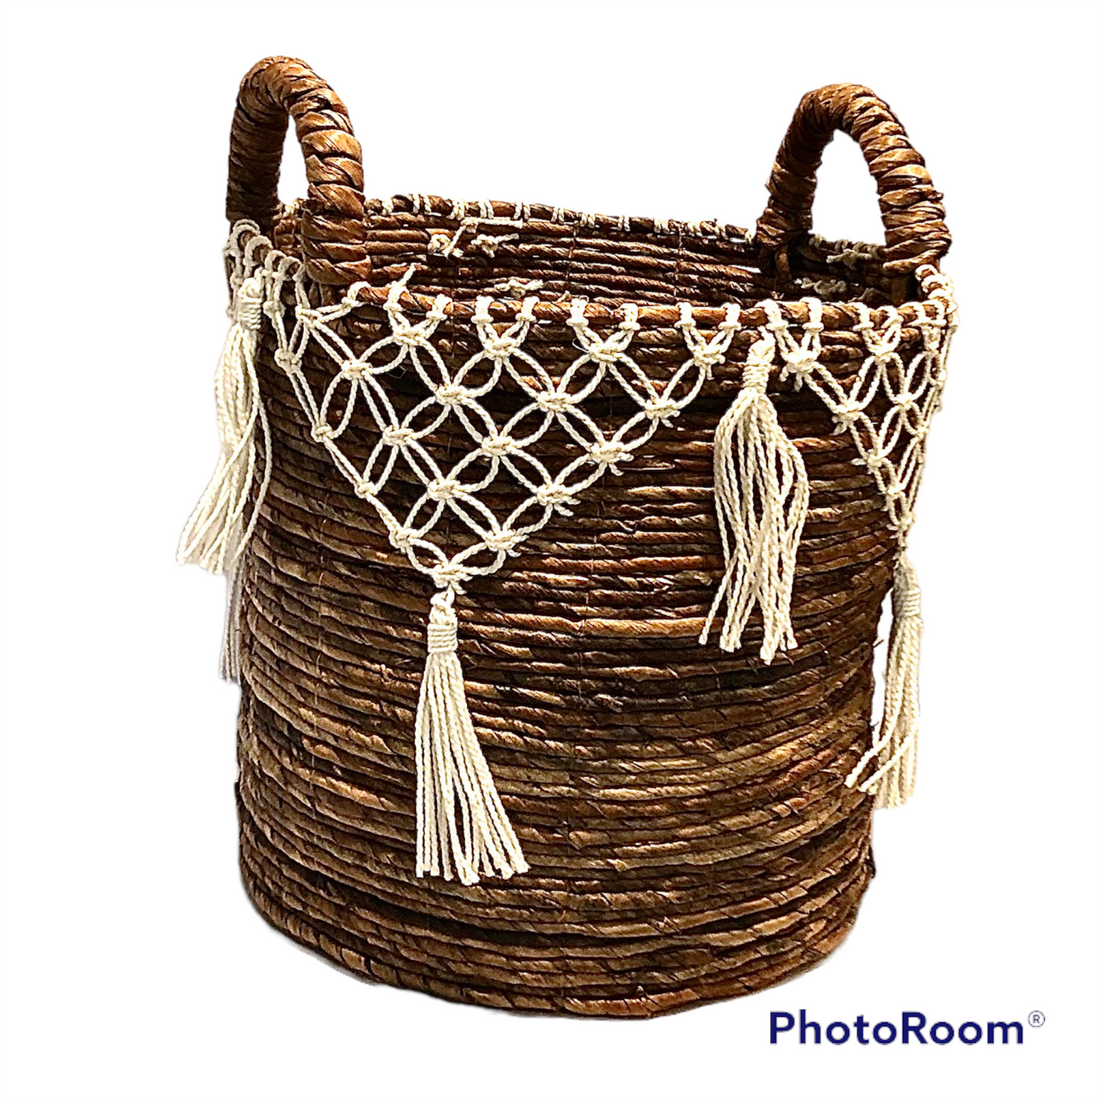 The Baker Gift Basket